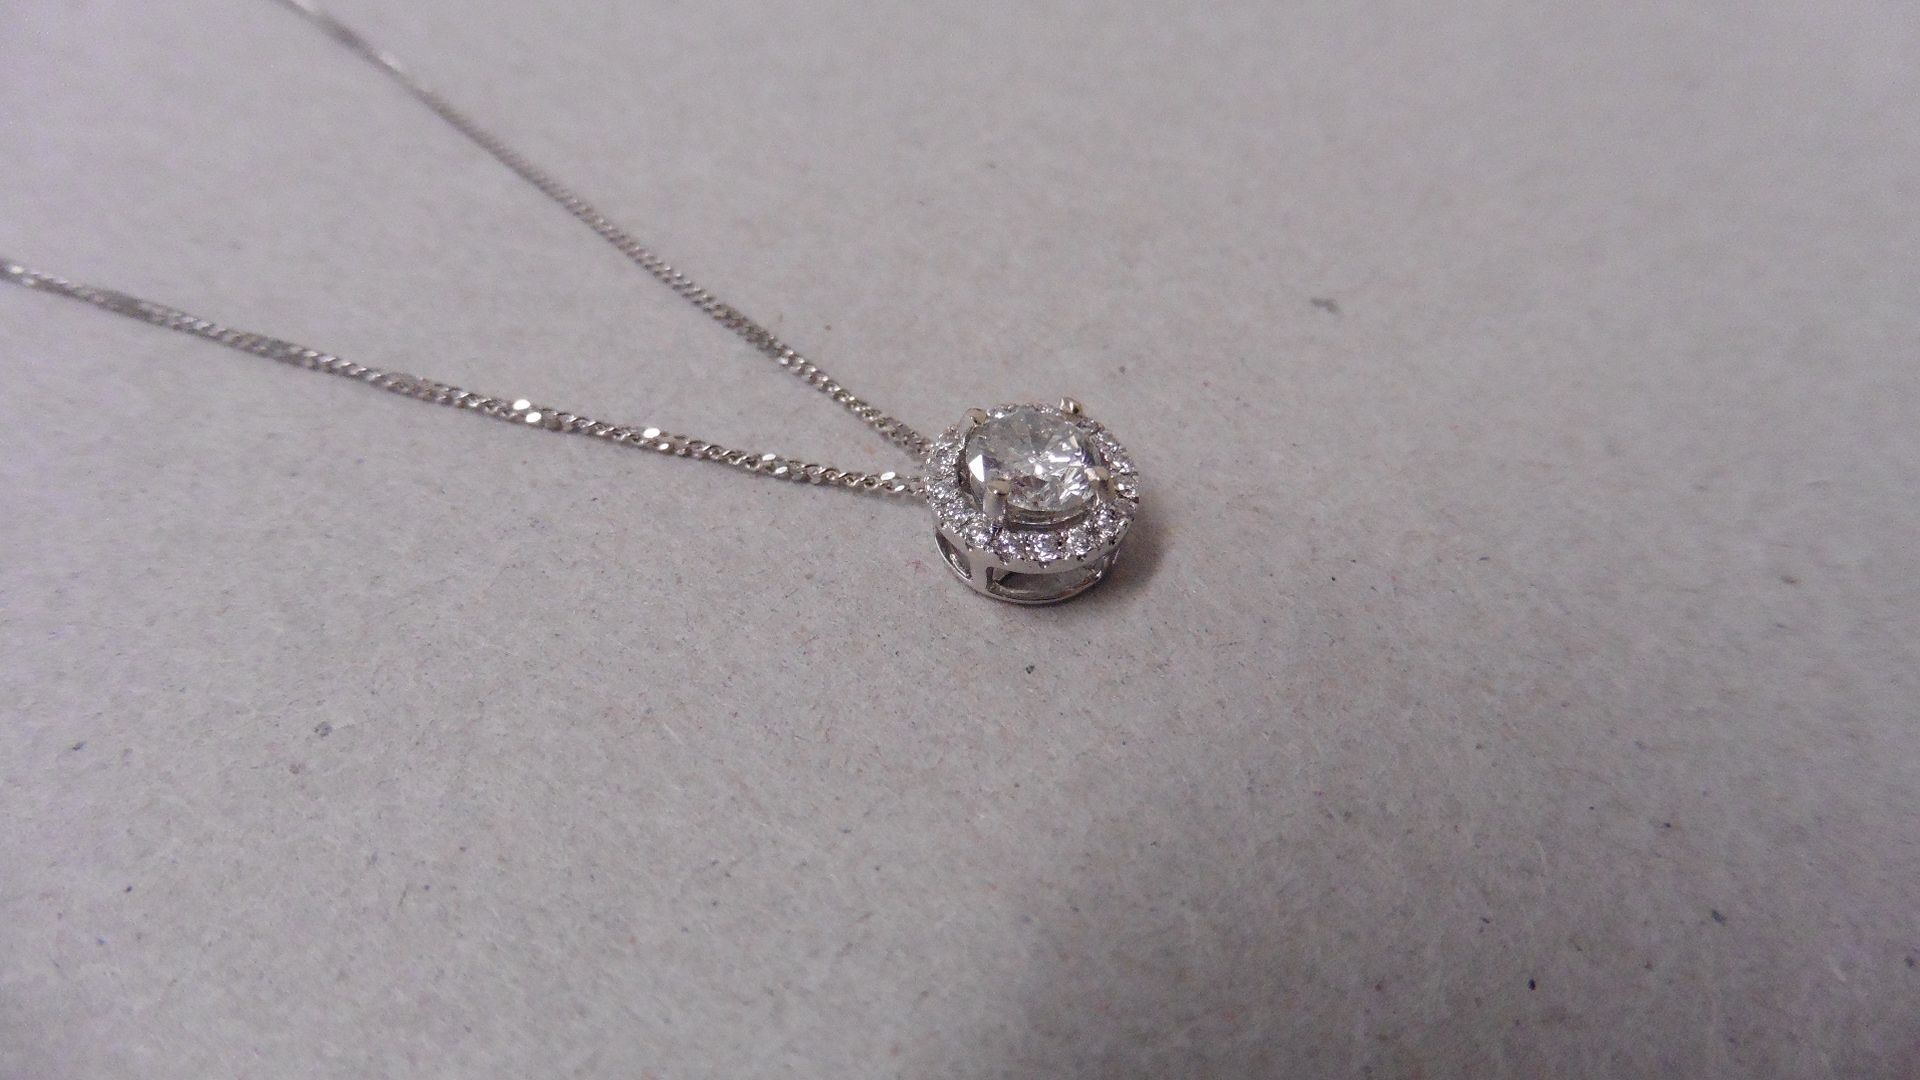 0.70ct diamond set pendant. Brilliant cut diamond I-J colour, si2-I1 clarity. Halo setting with - Image 2 of 3